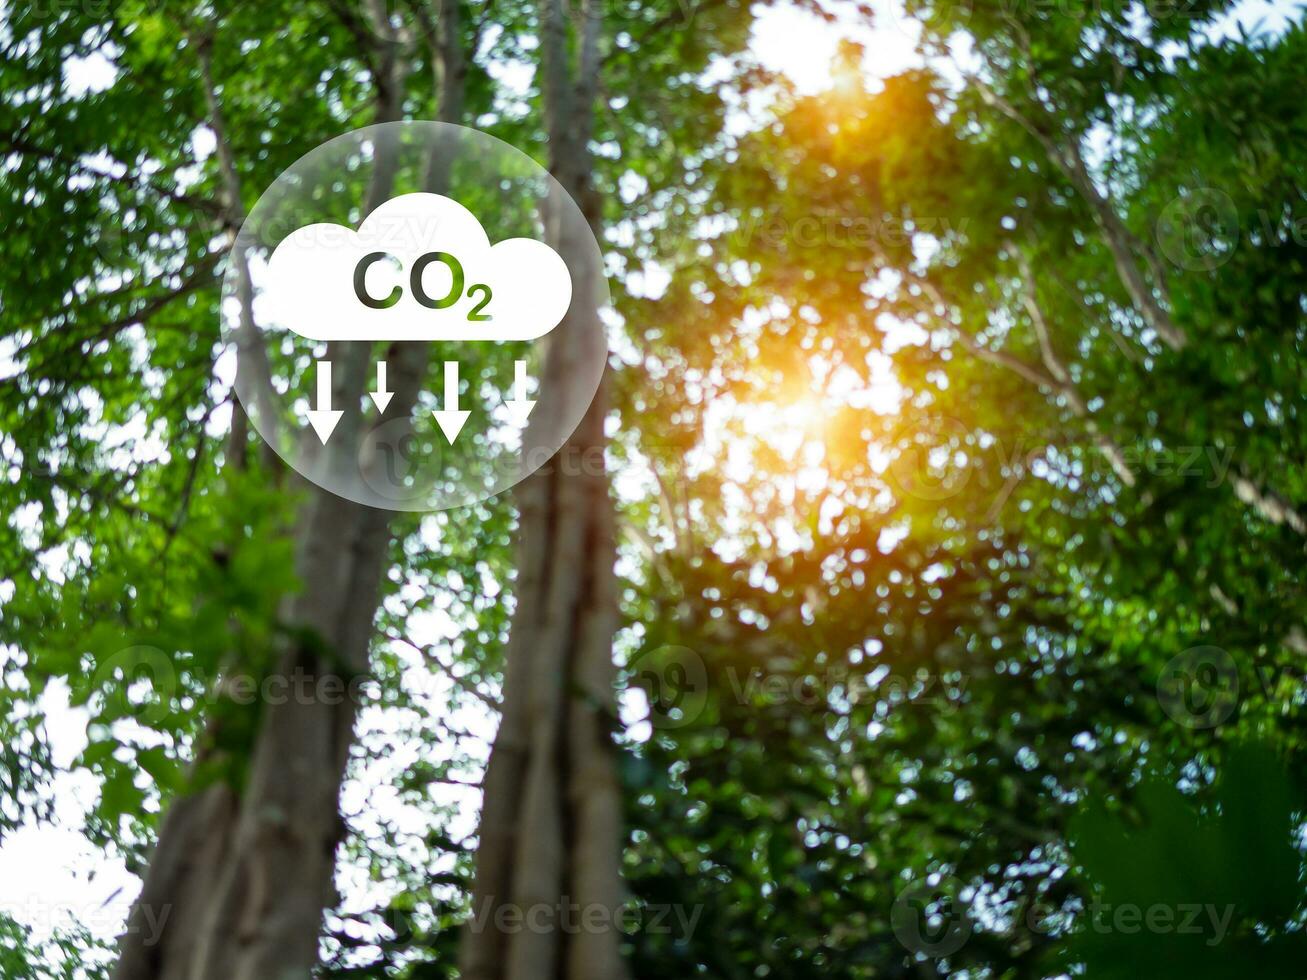 co2 utsläpp minskning begrepp, rena och vänlig miljö utan kol dioxid utsläpp. plantering träd till minska co2 utsläpp, miljö- skydd begrepp. foto